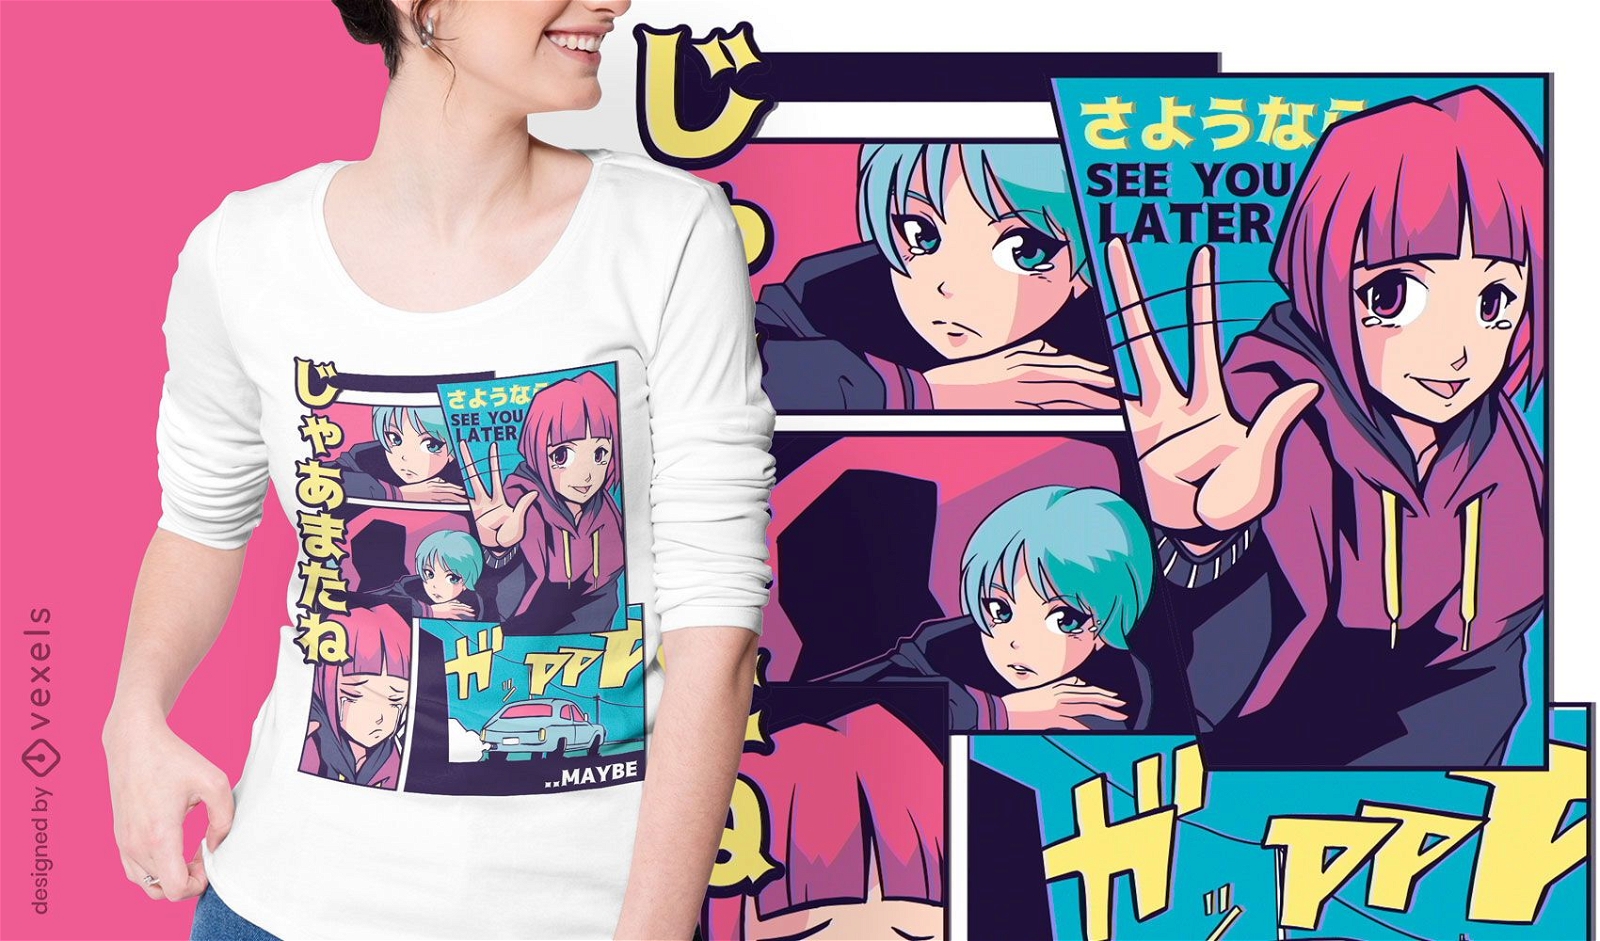 Vejo seu design de camisetas de anime